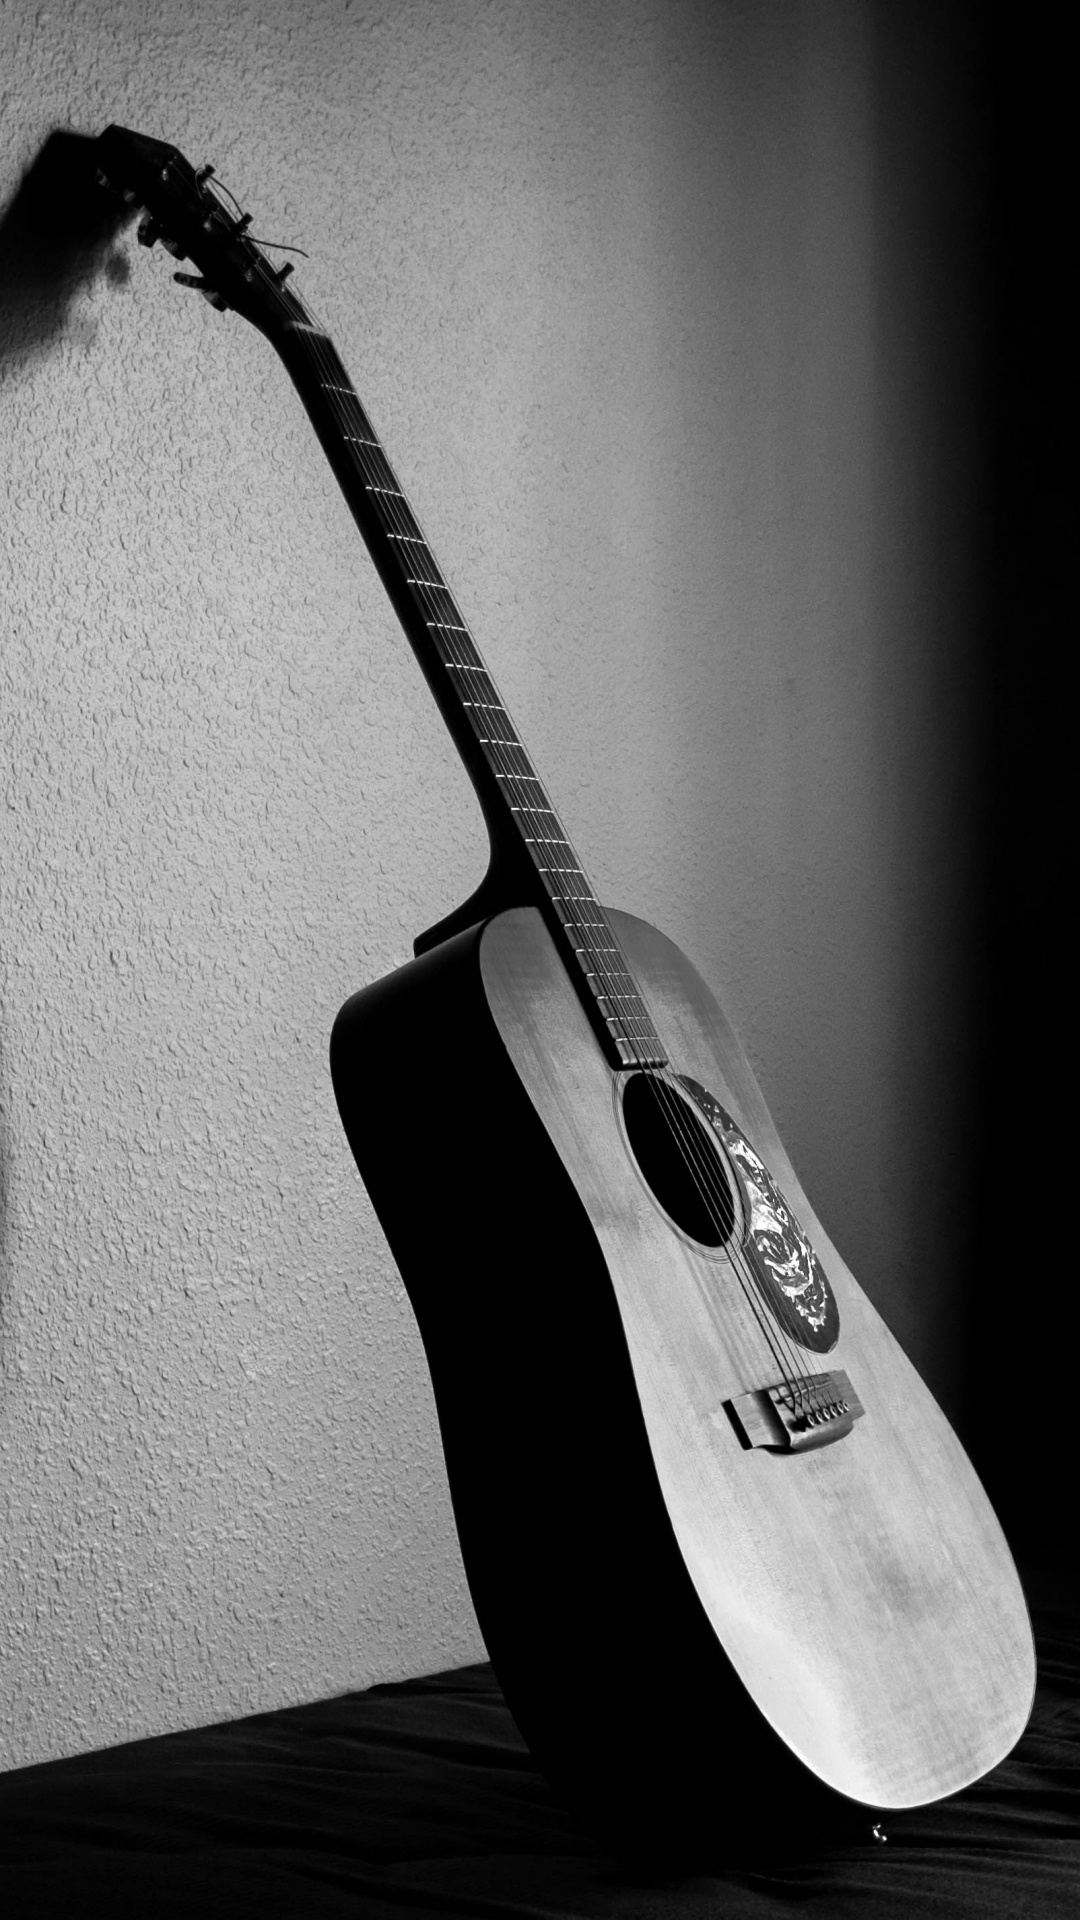 吉他, 声吉他, 拨弦乐器, 麦克风, 黑色和白色的 壁纸 1080x1920 允许